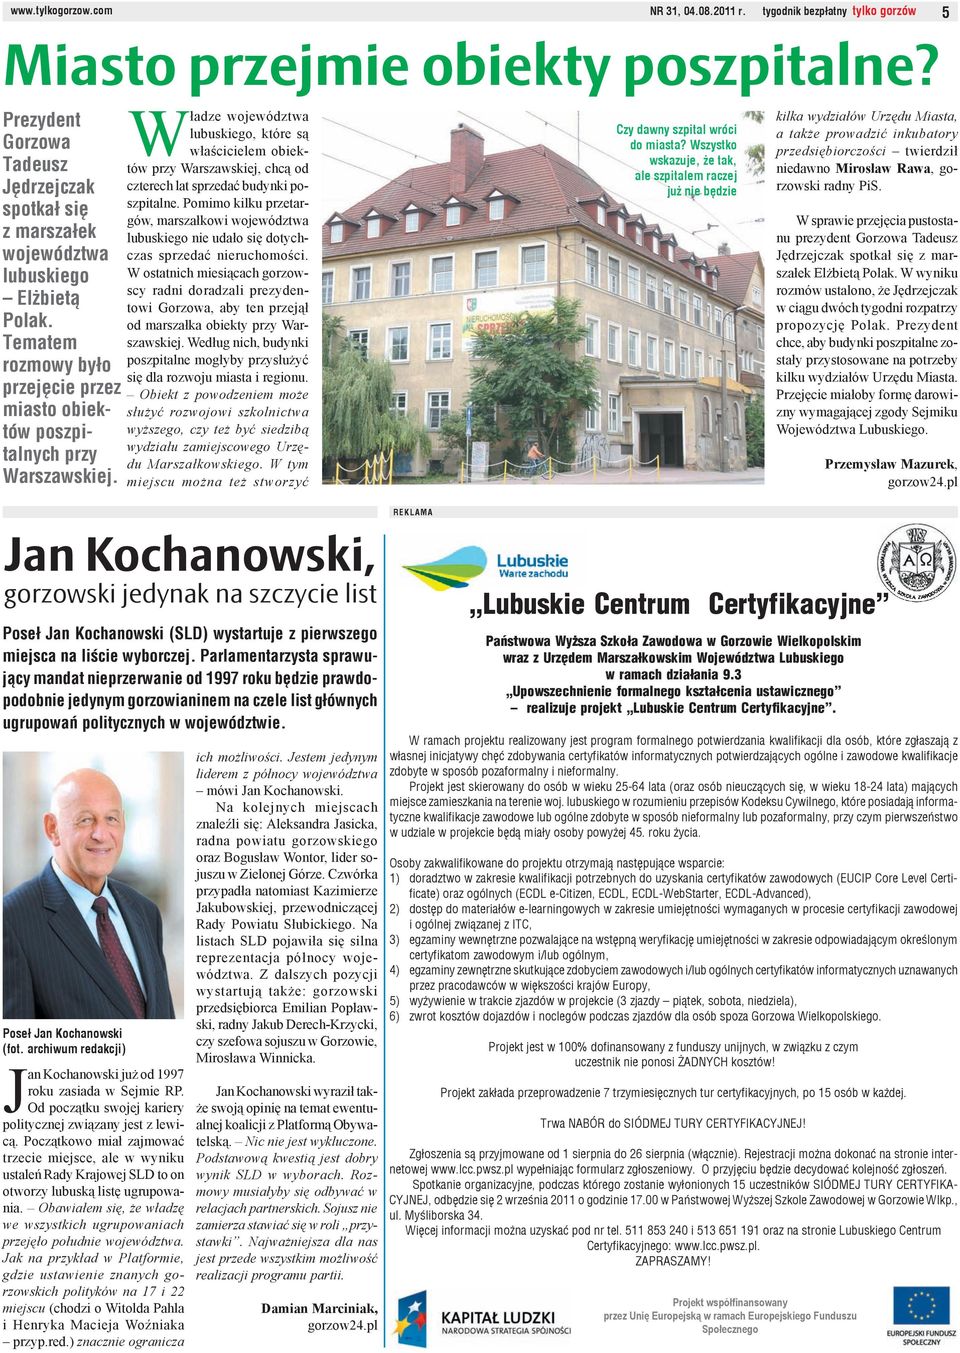 Władze województwa lubuskiego, które są właścicielem obiektów przy Warszawskiej, chcą od czterech lat sprzedać budynki poszpitalne.